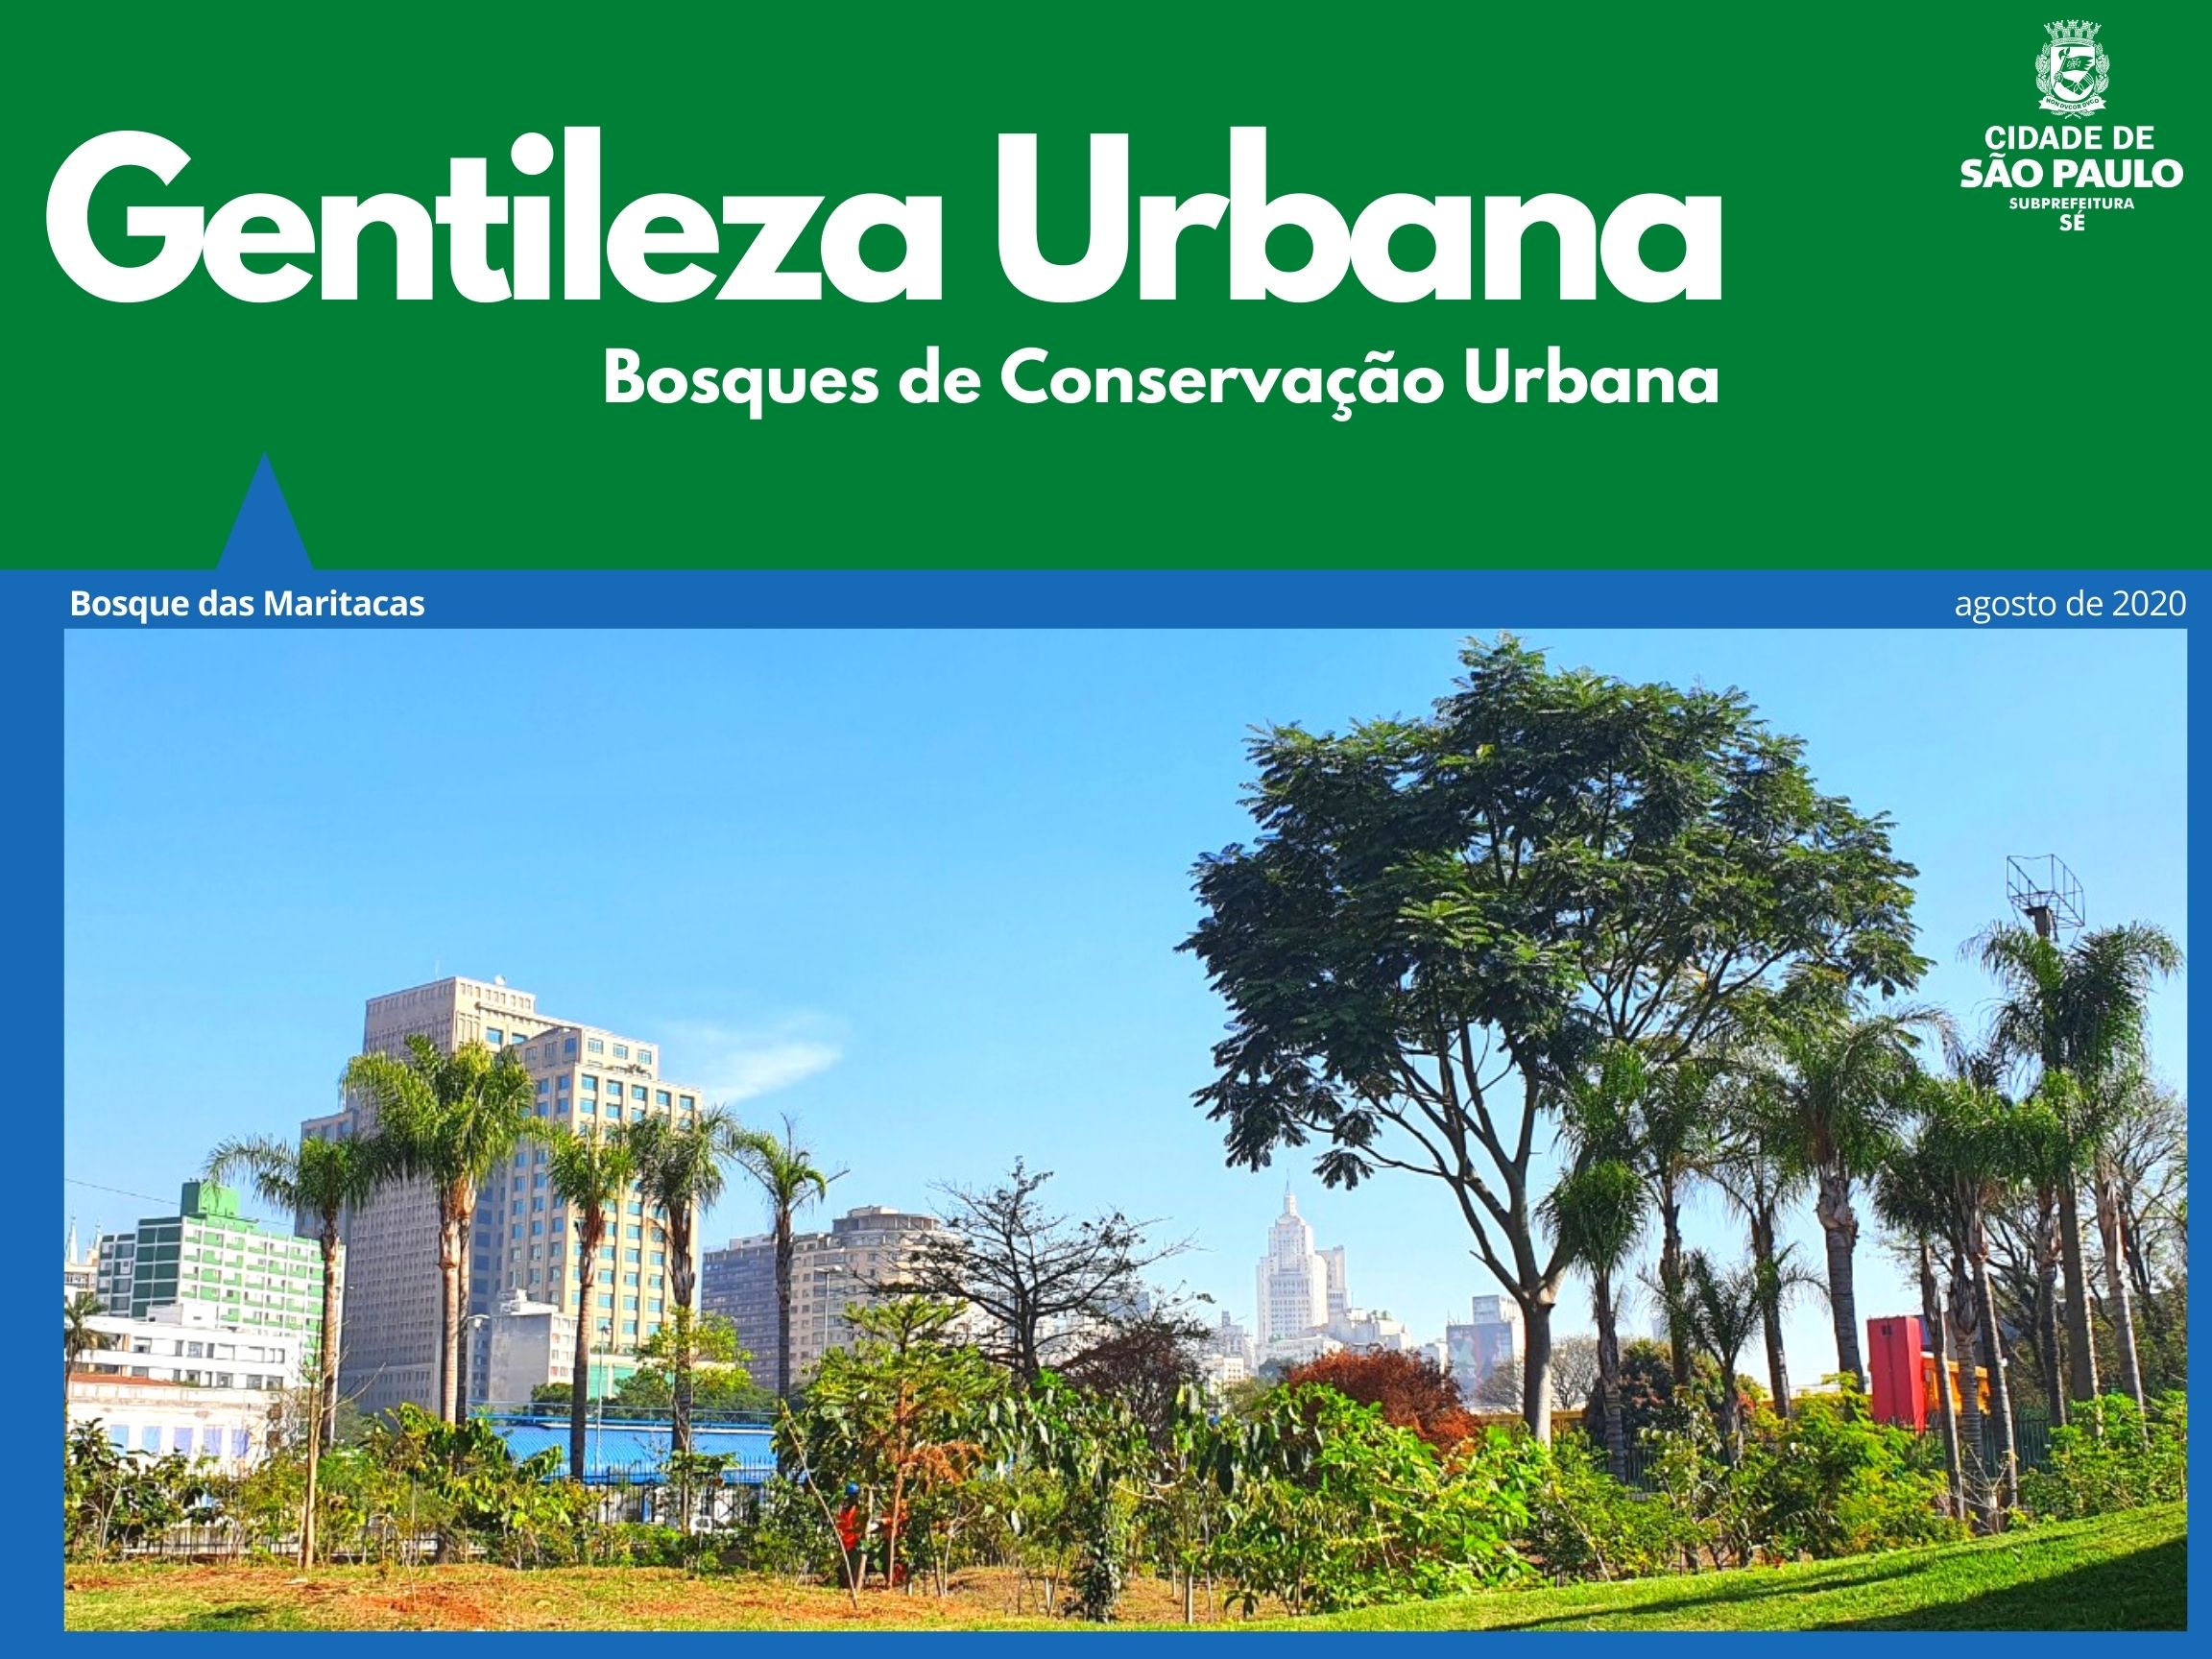 Arte escrito Gentileza Urbana com o logotipo da subprefeitura Sé mostra foto do bosque das maritacas e ao fundo o o prédio do Santander